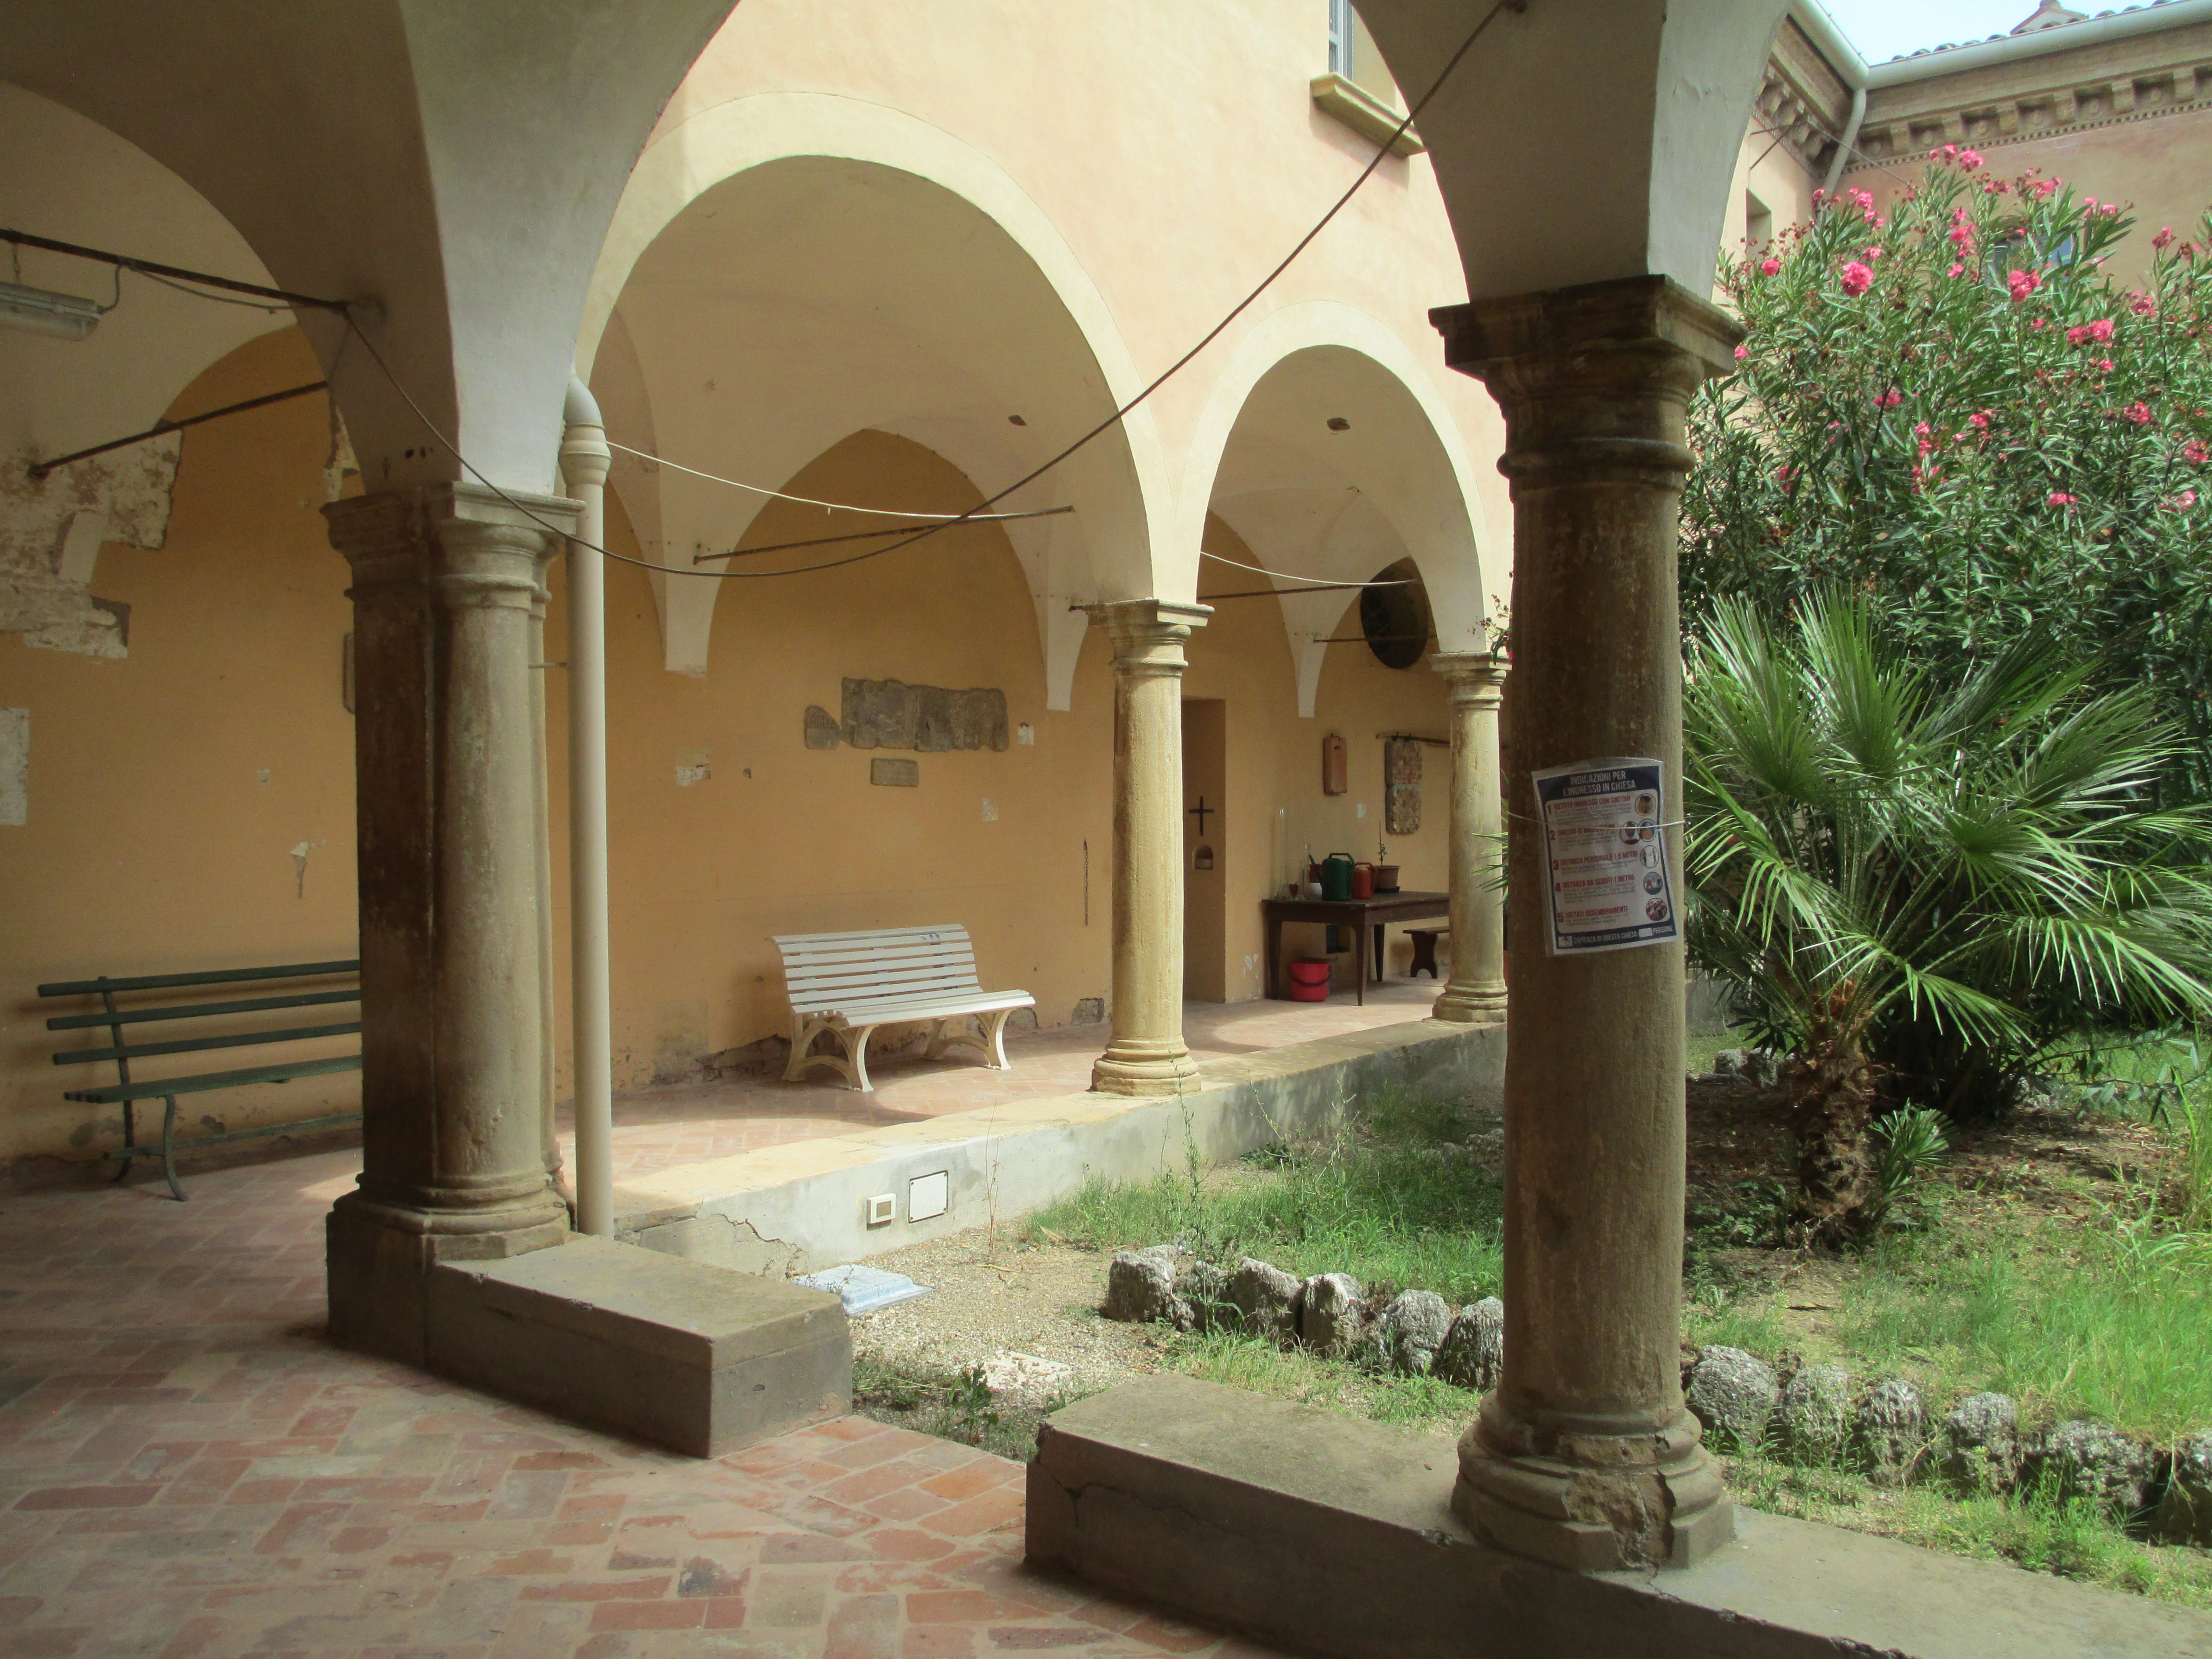 Abbazia di S. Salvatore (abbazia, lateranense) - San Lazzaro di Savena (BO) 